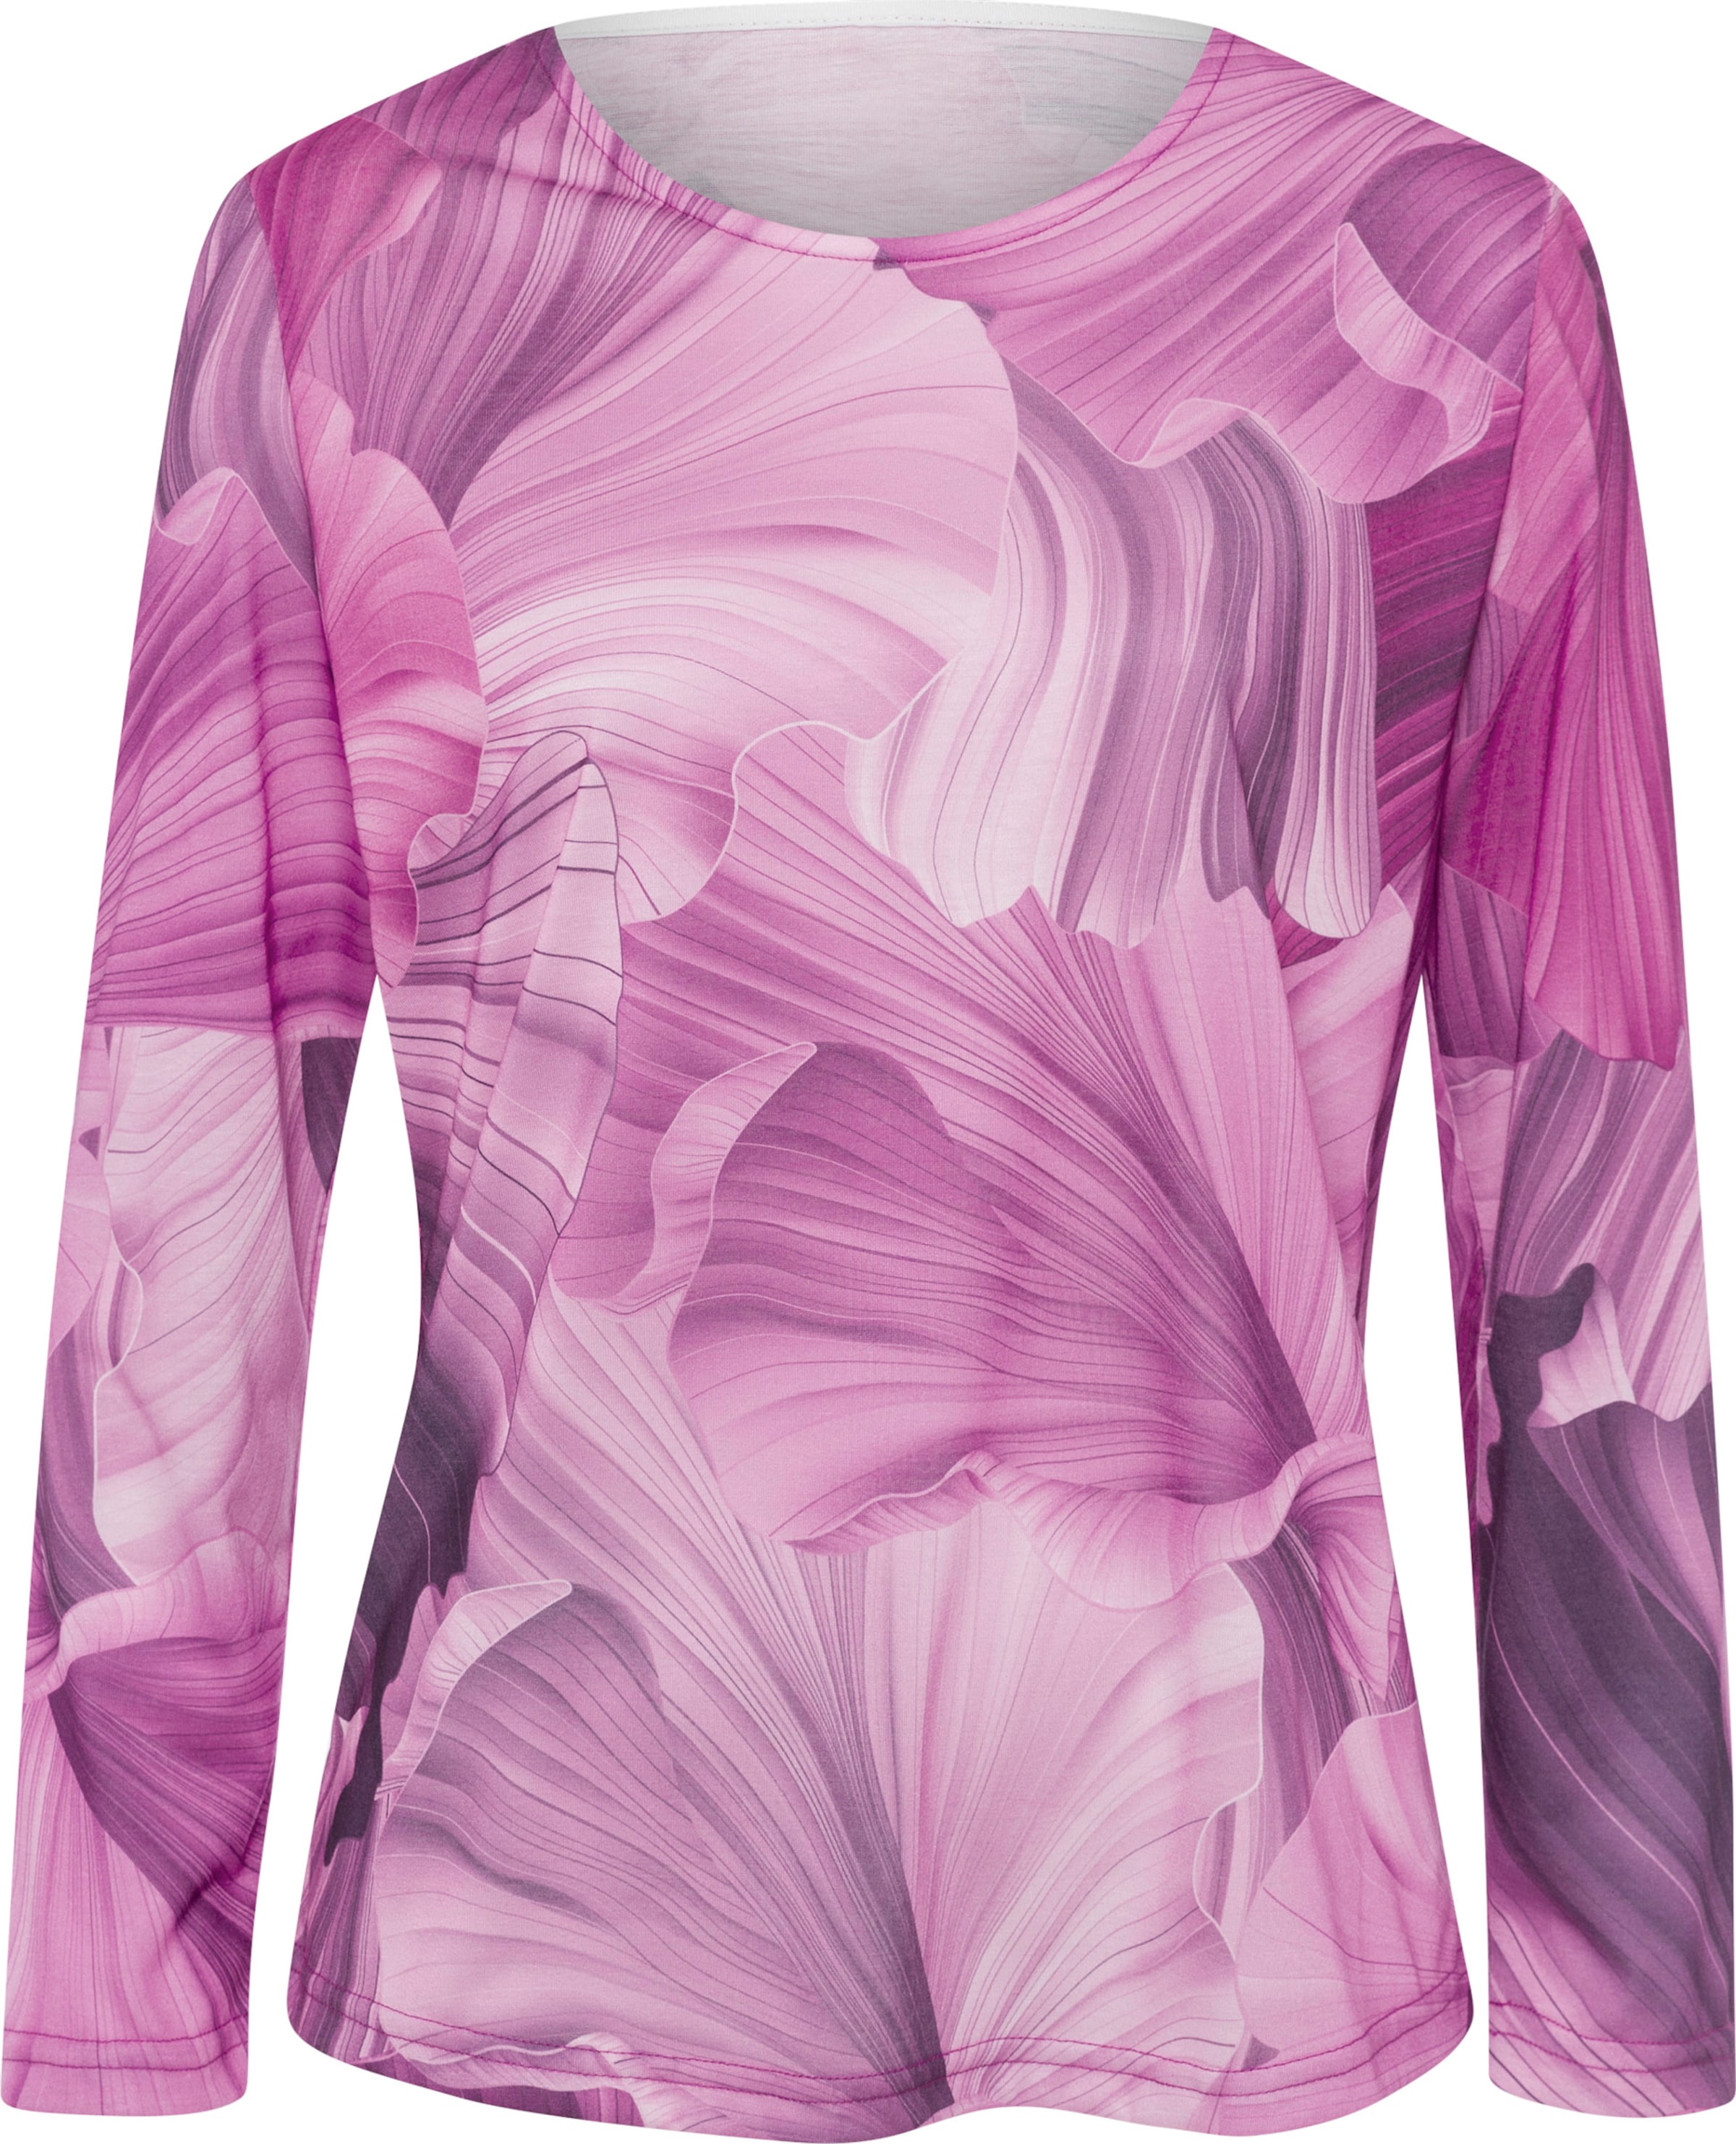 Your Look... for less! Dames Shirt met lange mouwen roze-magenta bedrukt Maat